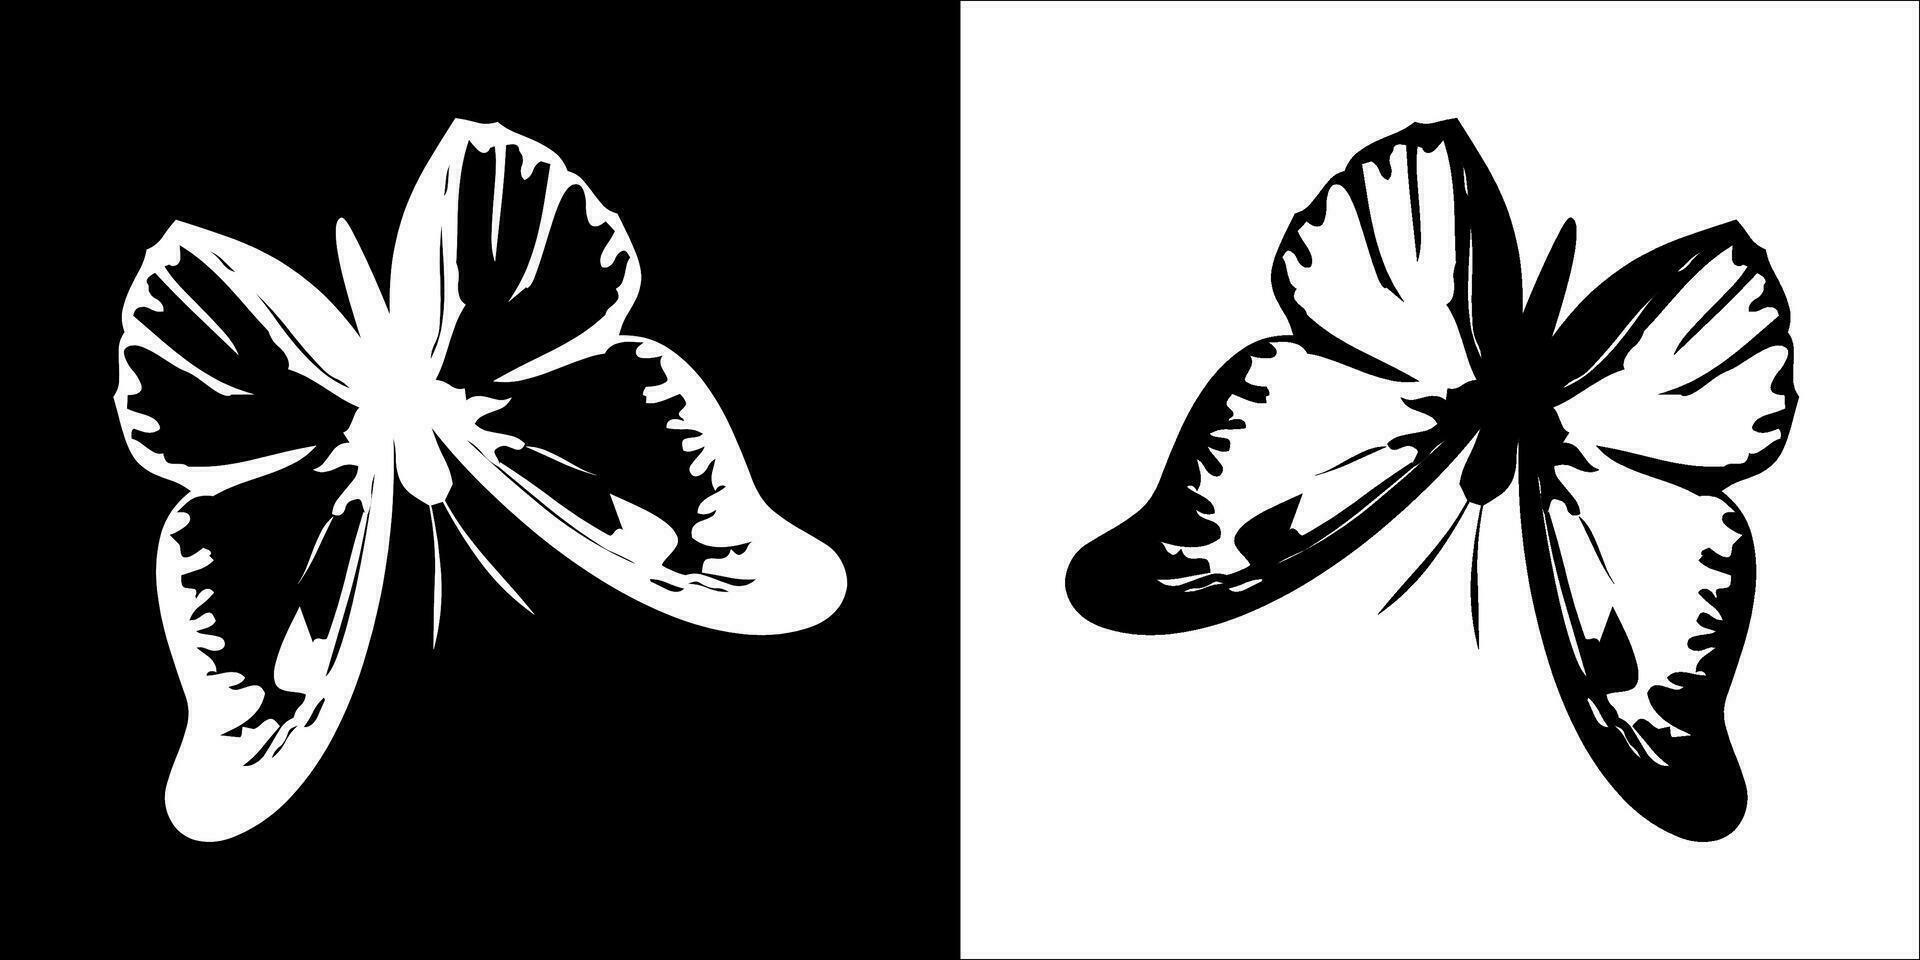 illustration vecteur graphique de papillon icône